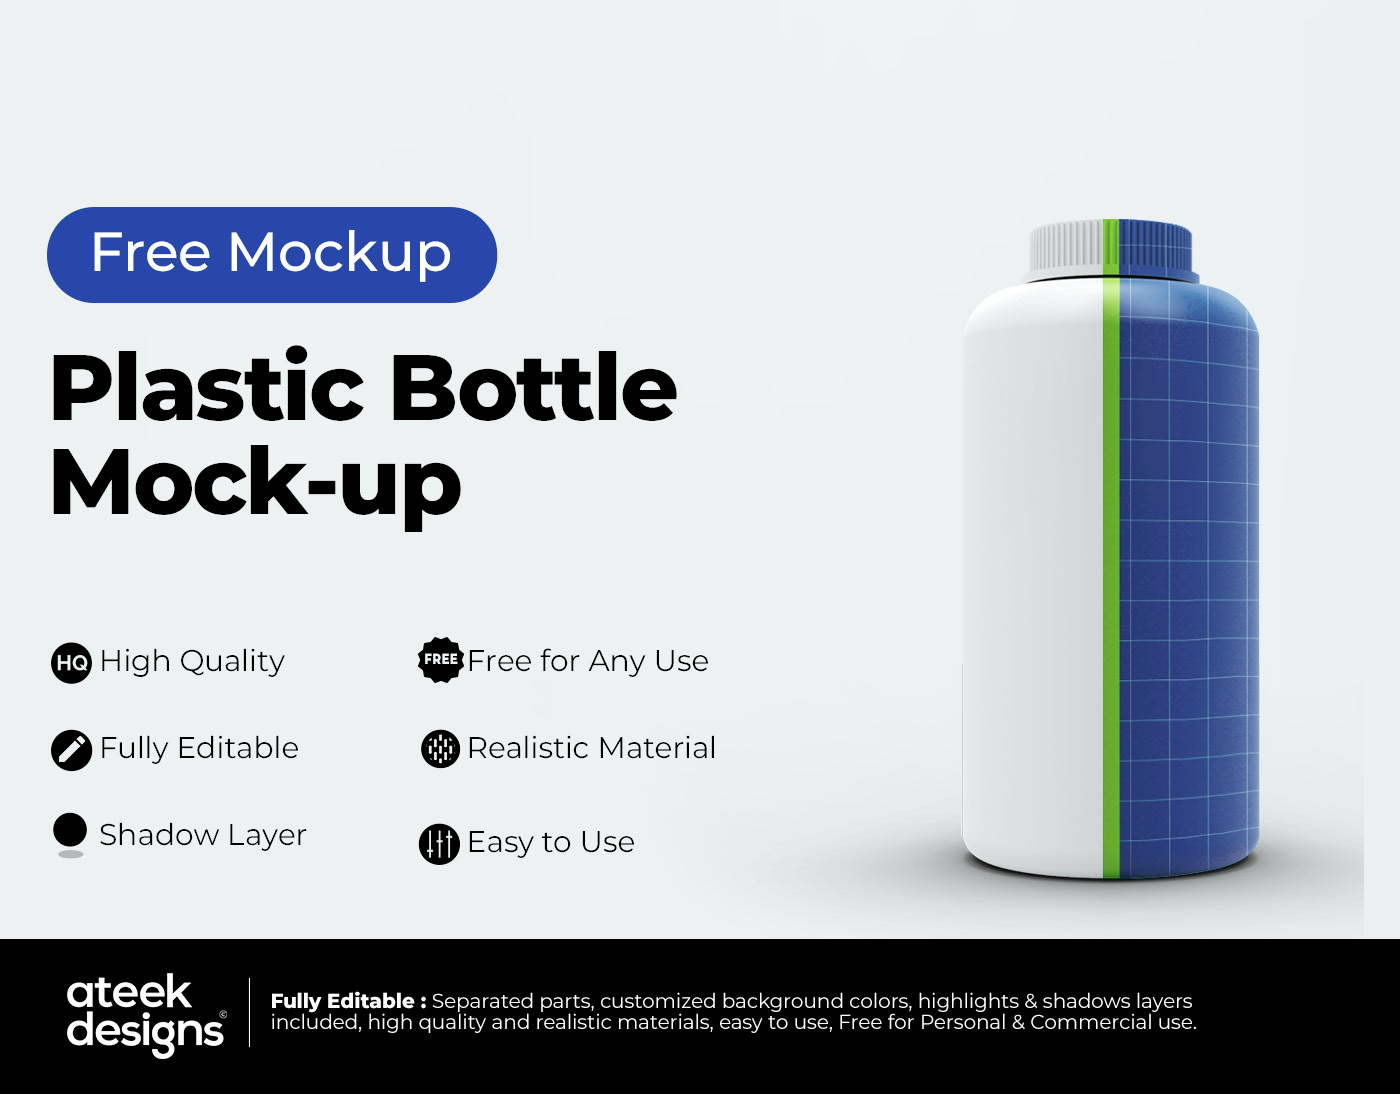 bottle design free how to mock mock-up Mockup plastic tutorial up